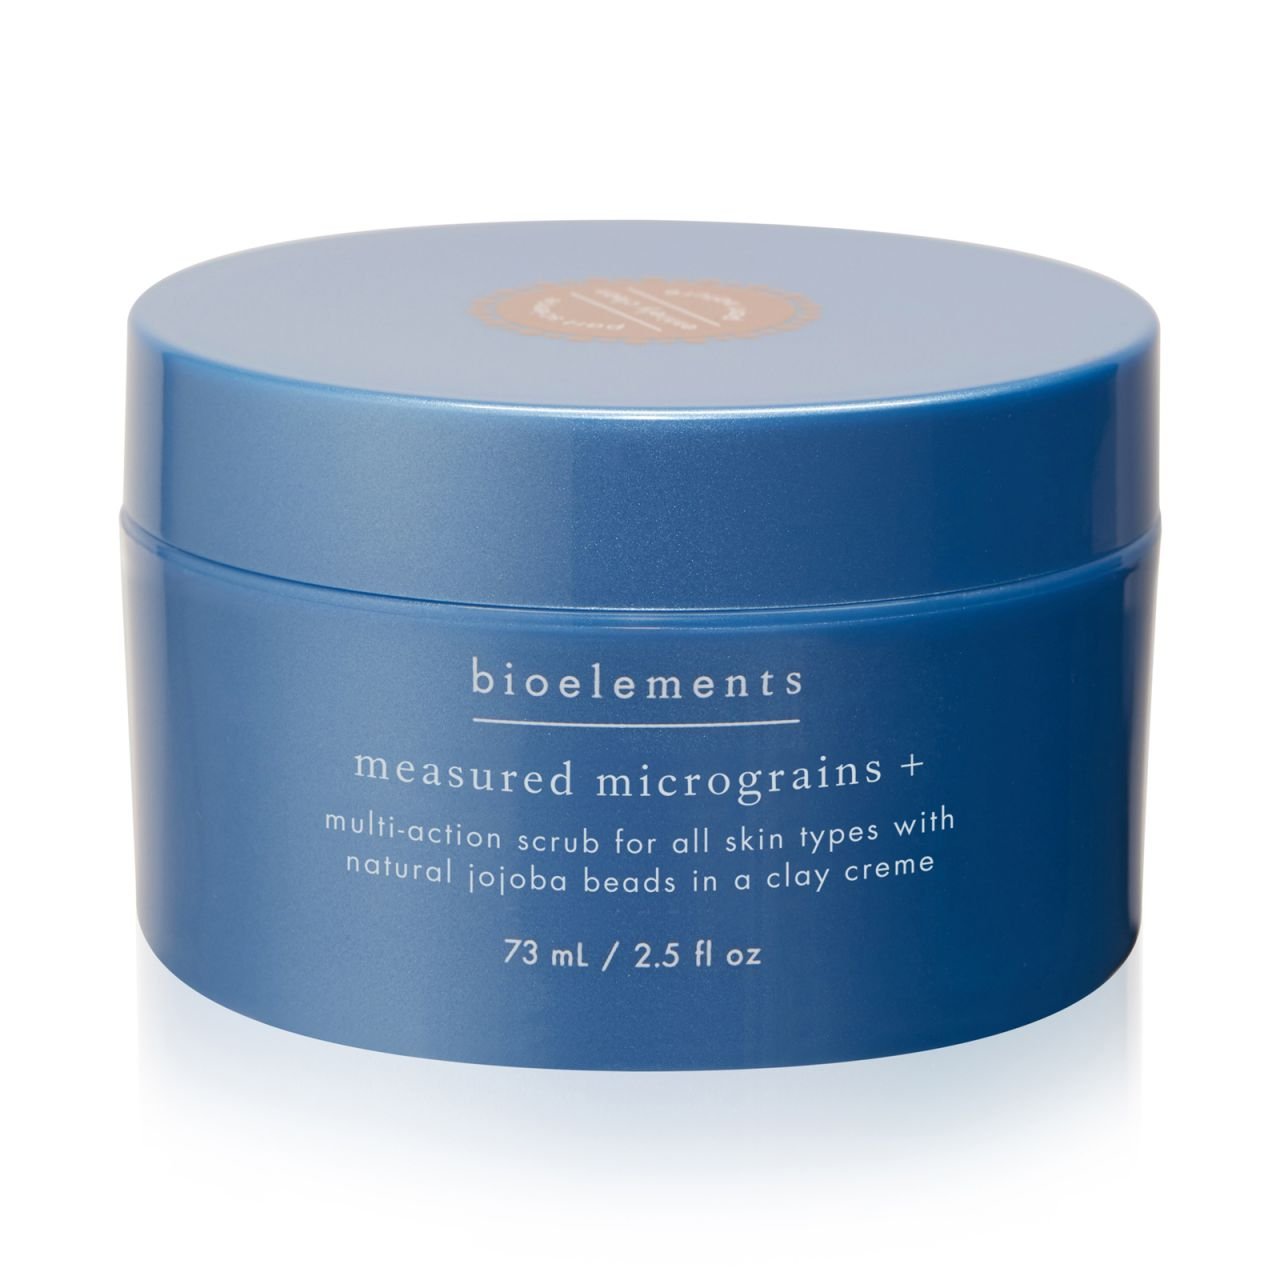 Многофункциональный скраб для всех типов кожи, включая чувствительную Measured Micrograins + Bioelements, 73мл